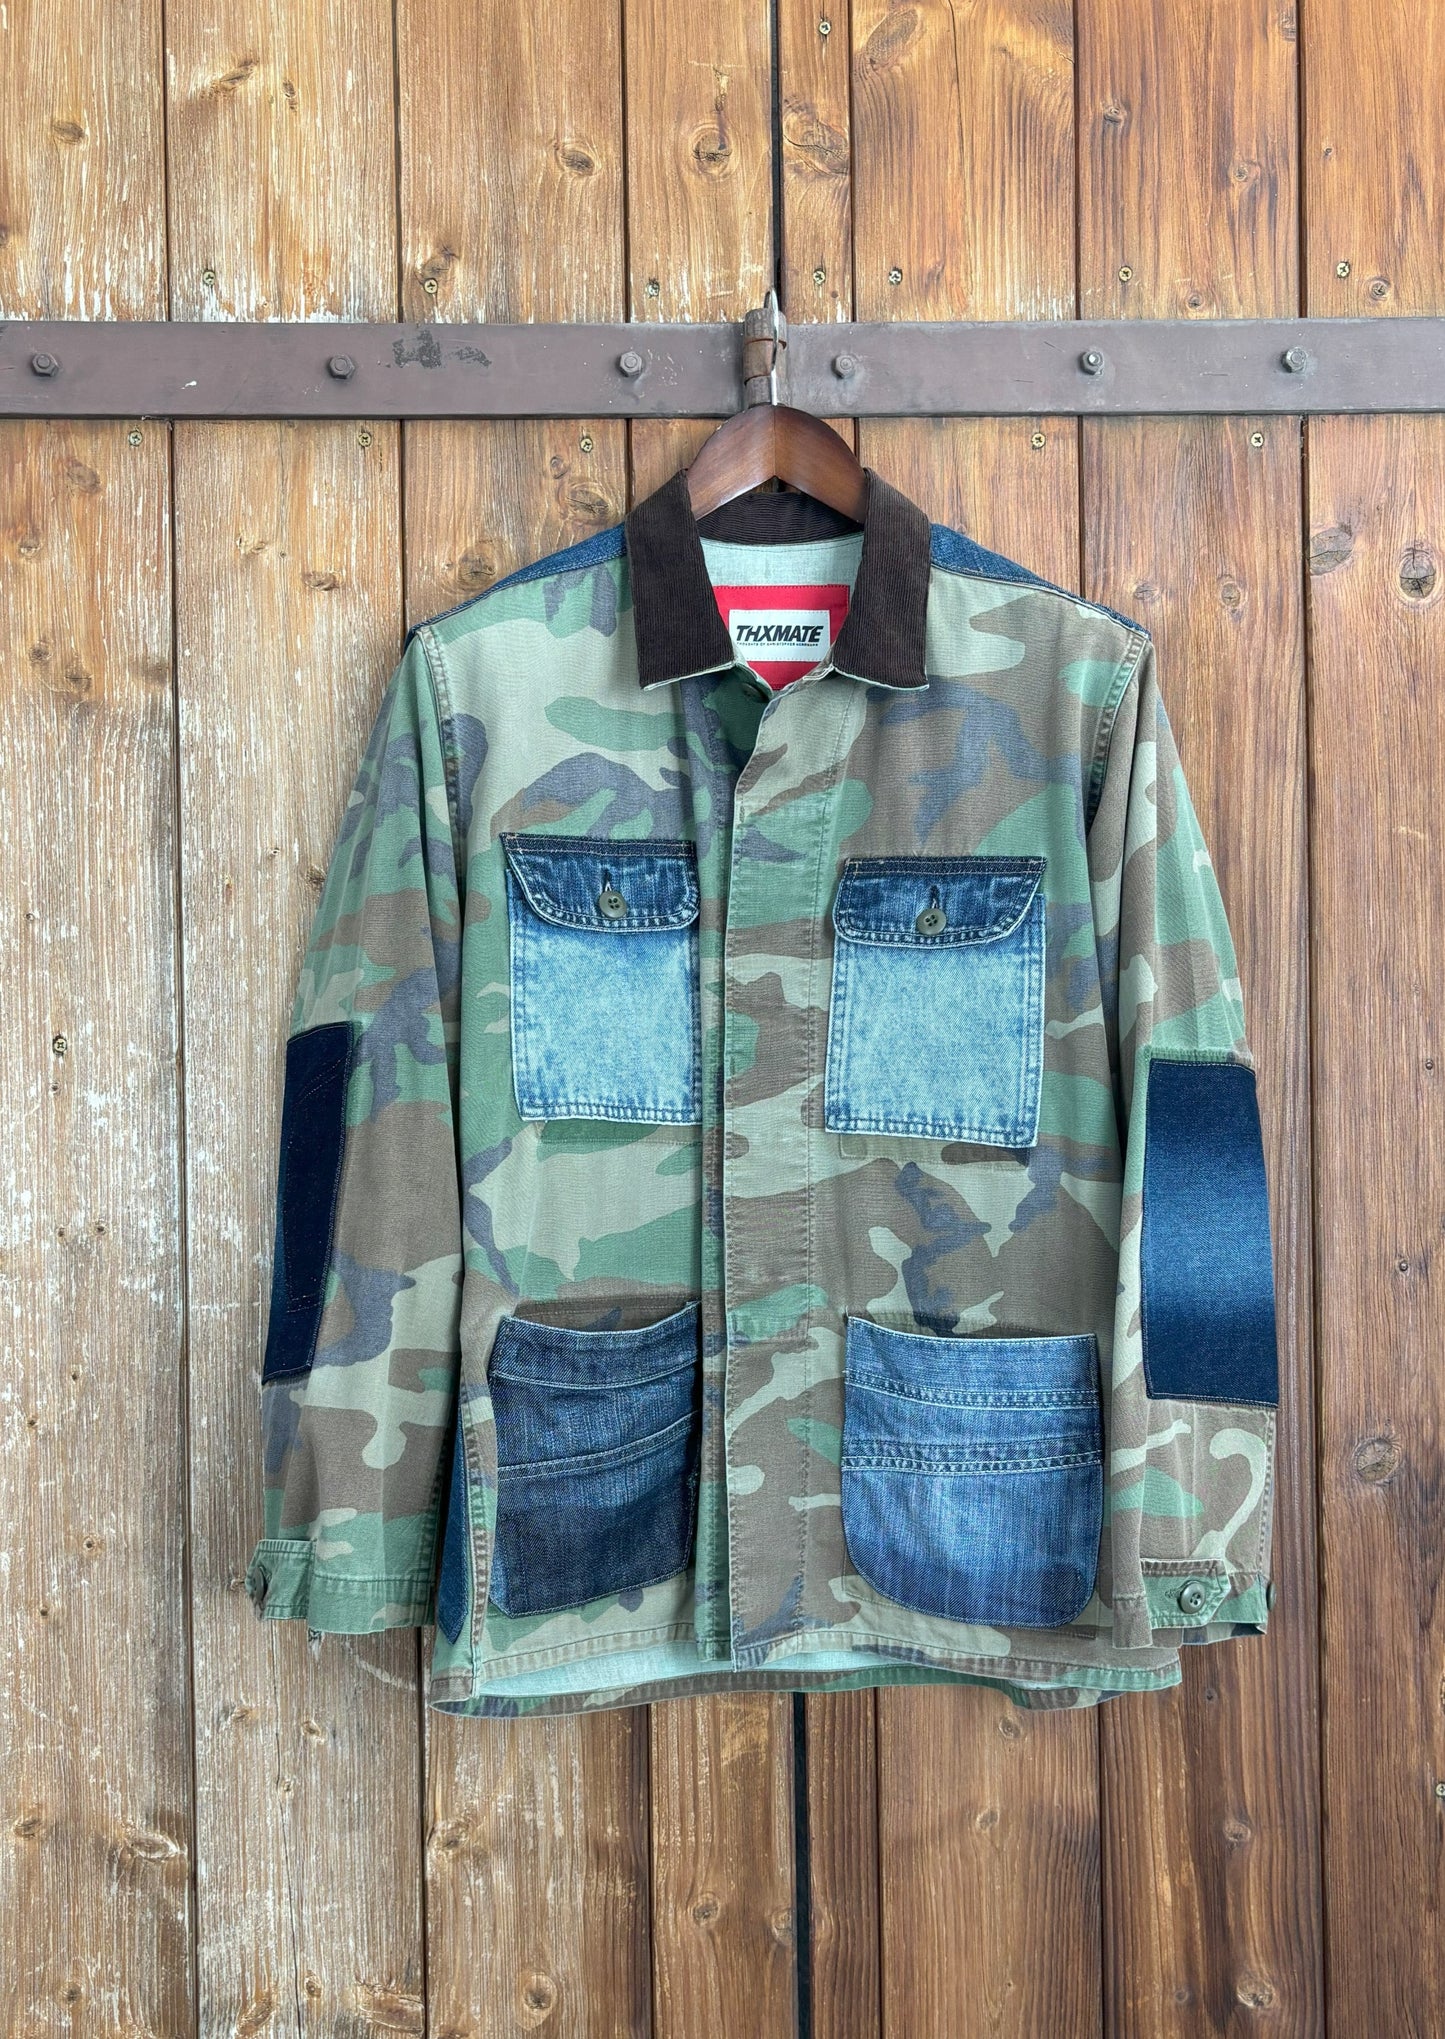 Camouflage-Jacke mit vier aufgesetzten Jeans-Taschen und verstärkten Ellenbogen- und Schulterpartien aus Denim. Der Kentkragen ist aus dunkelbraunem Cordstoff gefertigt und die Jacke wird mit einem Knopfverschluss geschlossen.